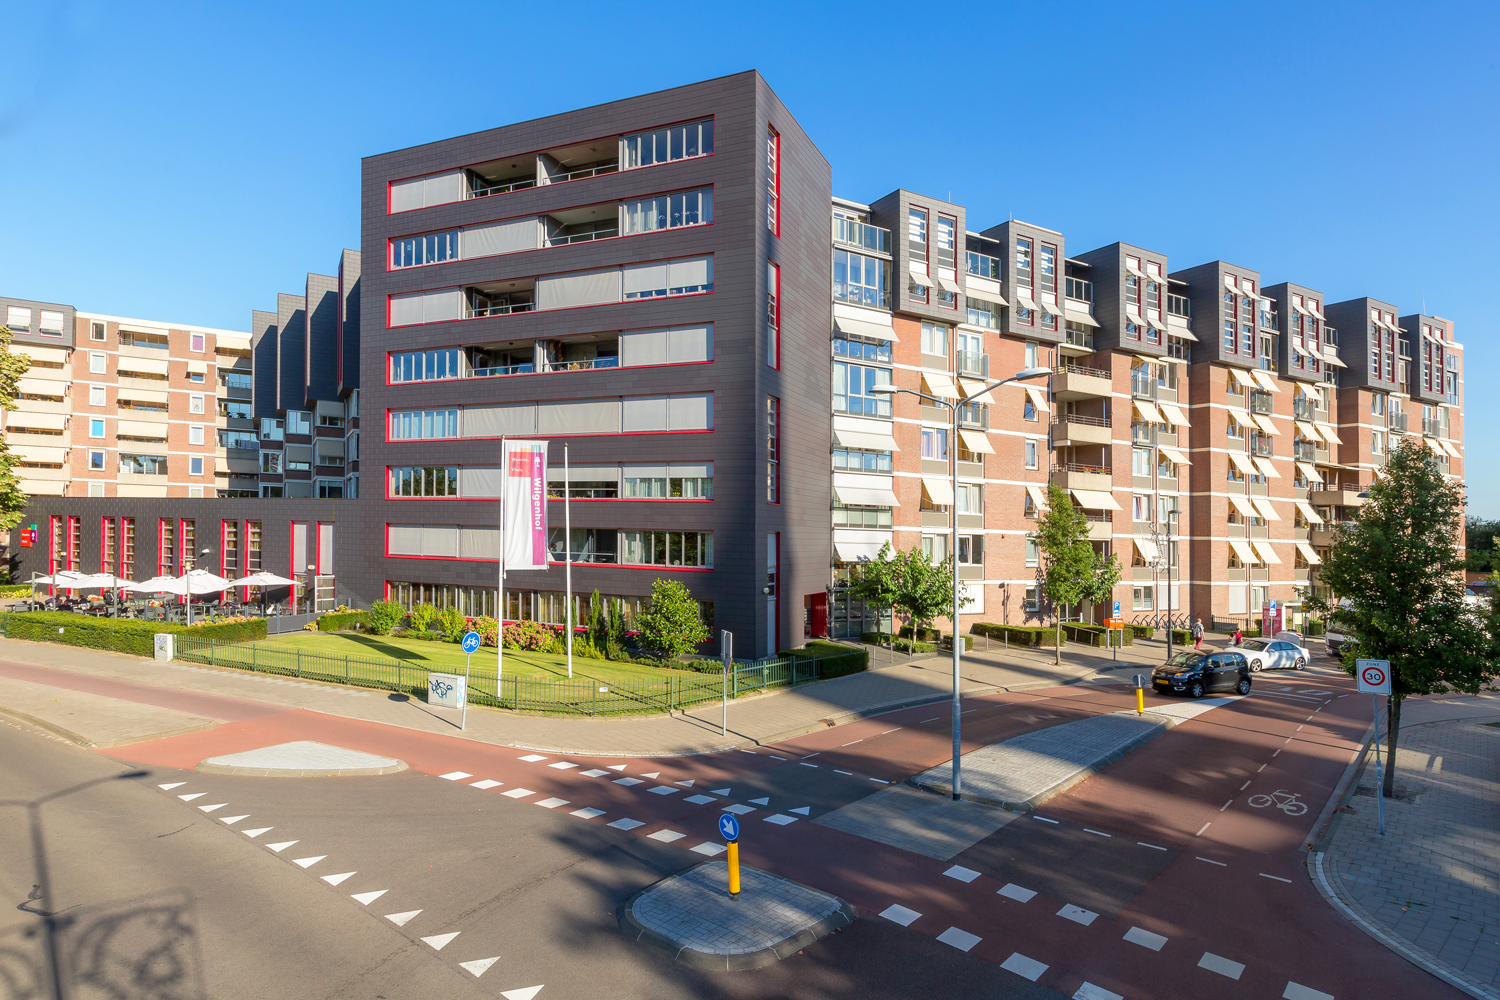 Gasthuisstraat 617, 5614 AX Eindhoven, Nederland